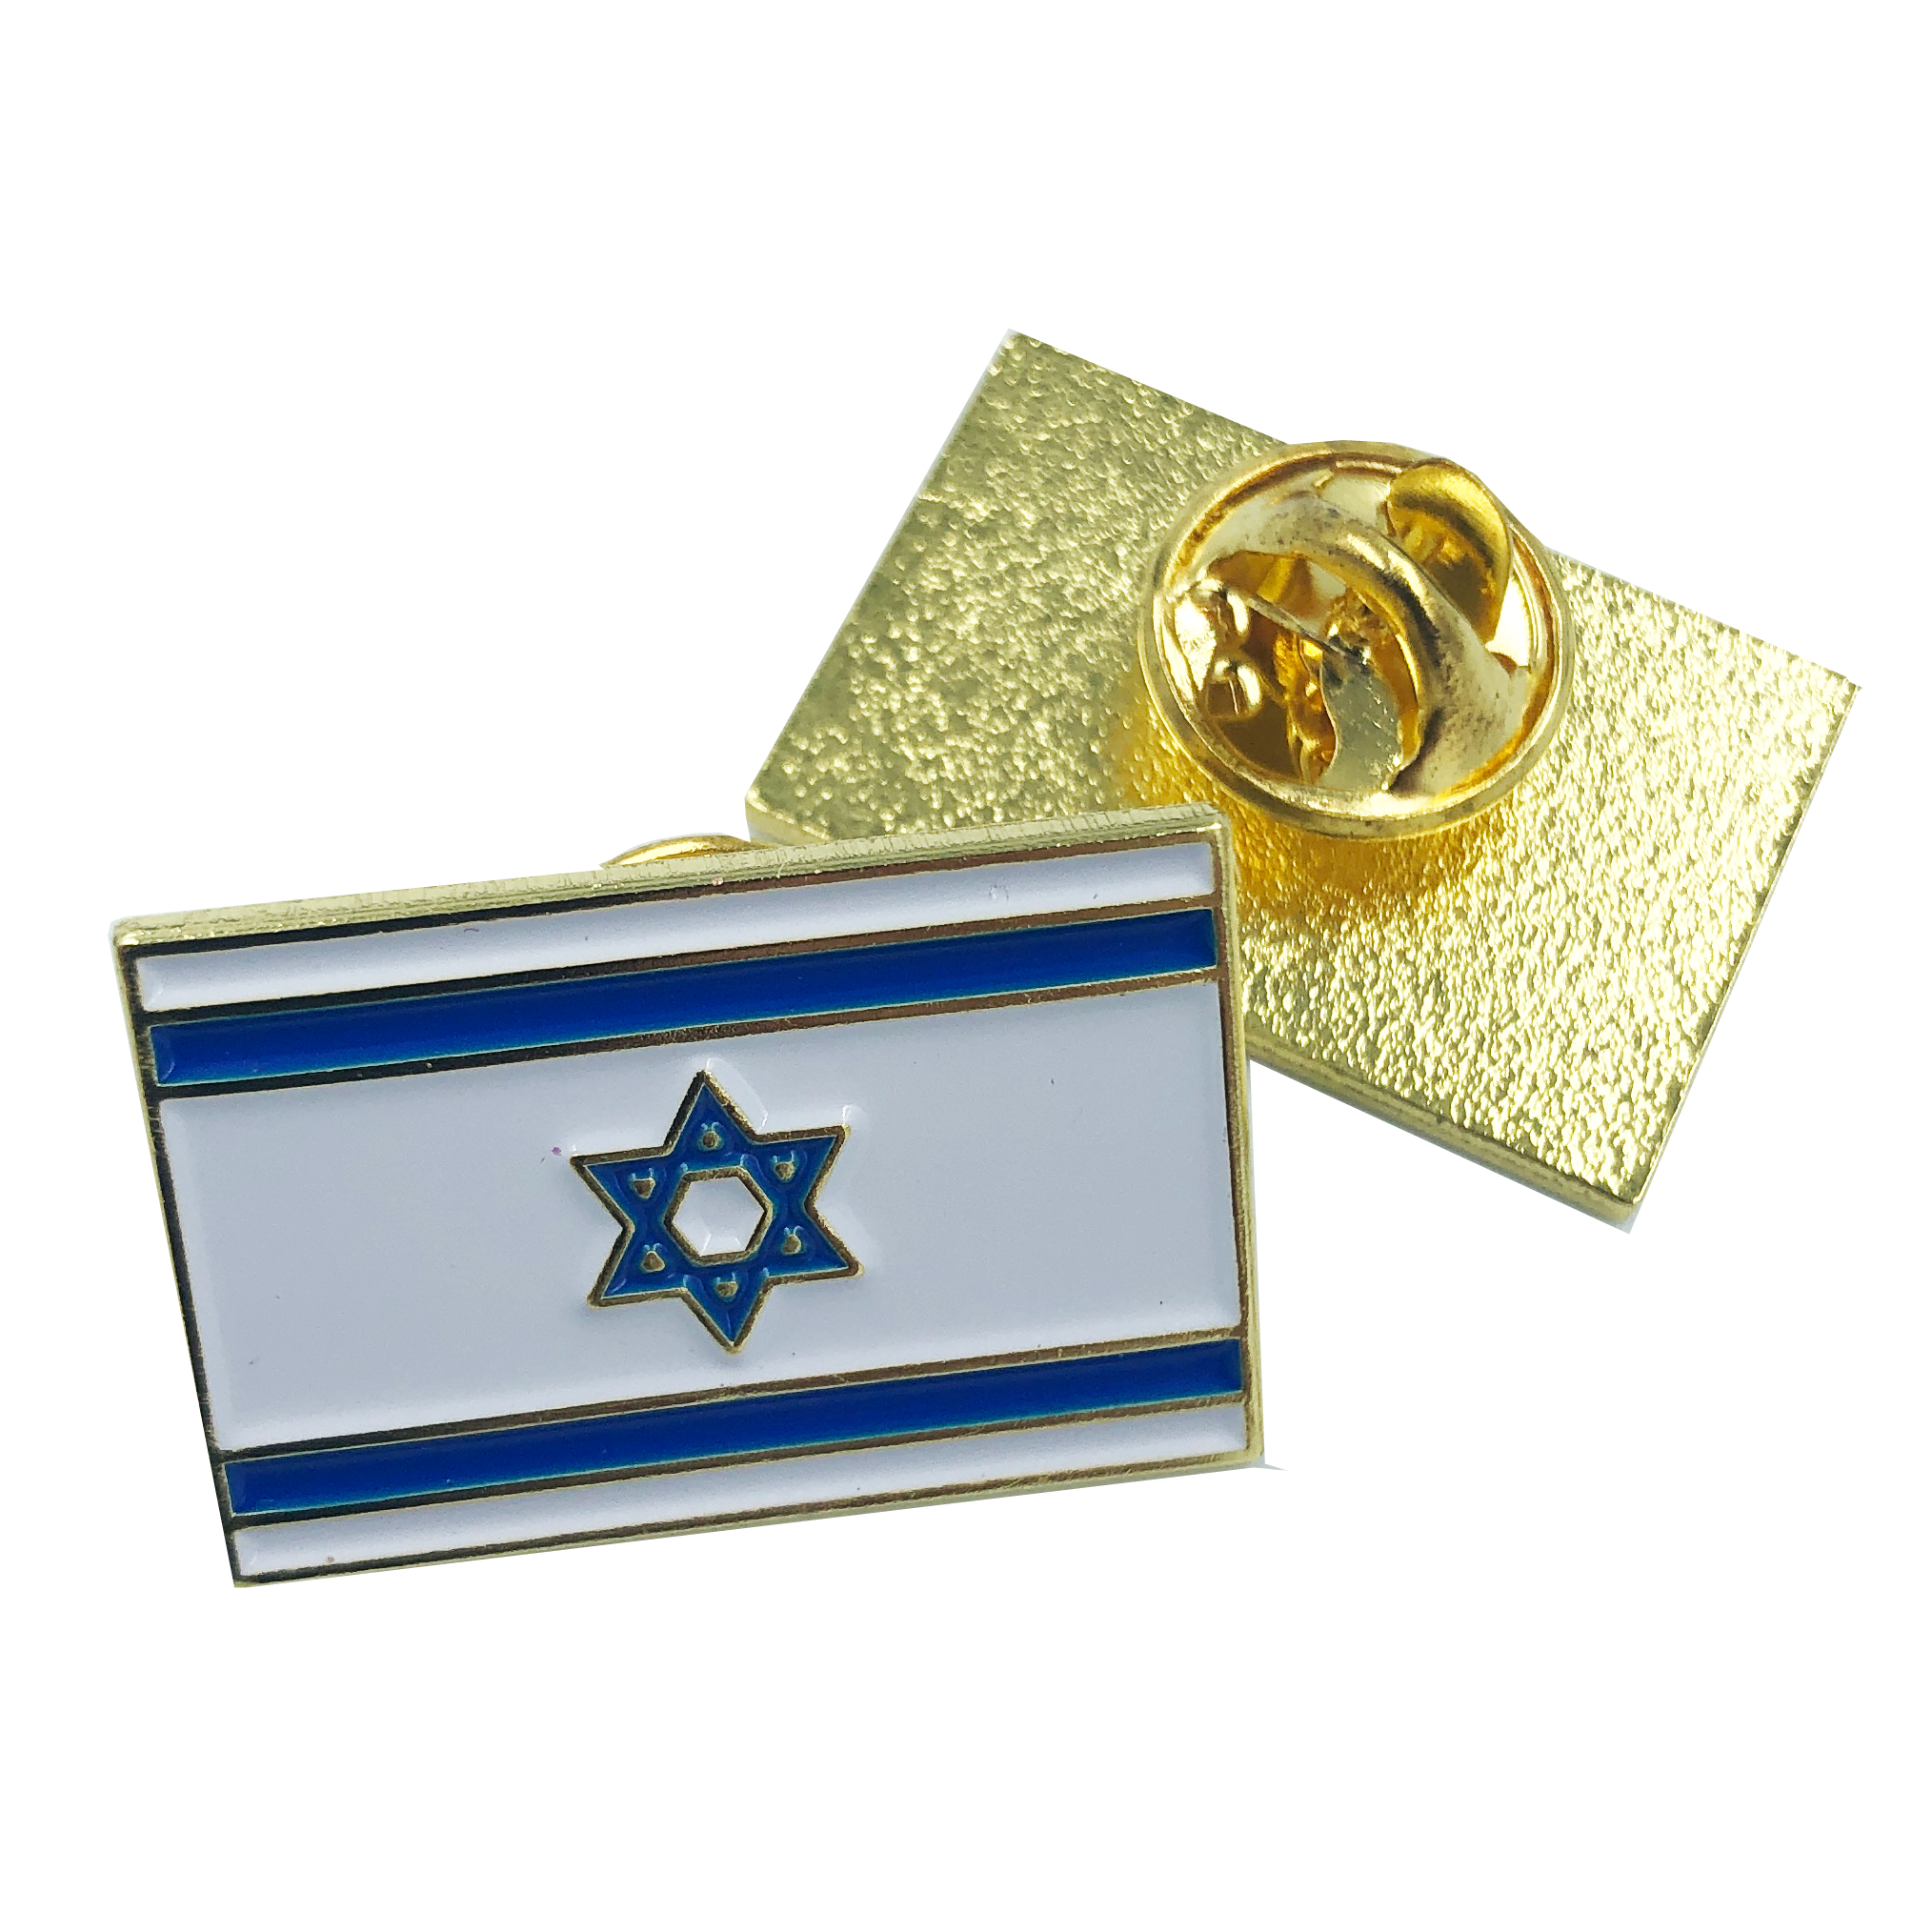 I-004 Israeli Flag Lapel Pin Israel